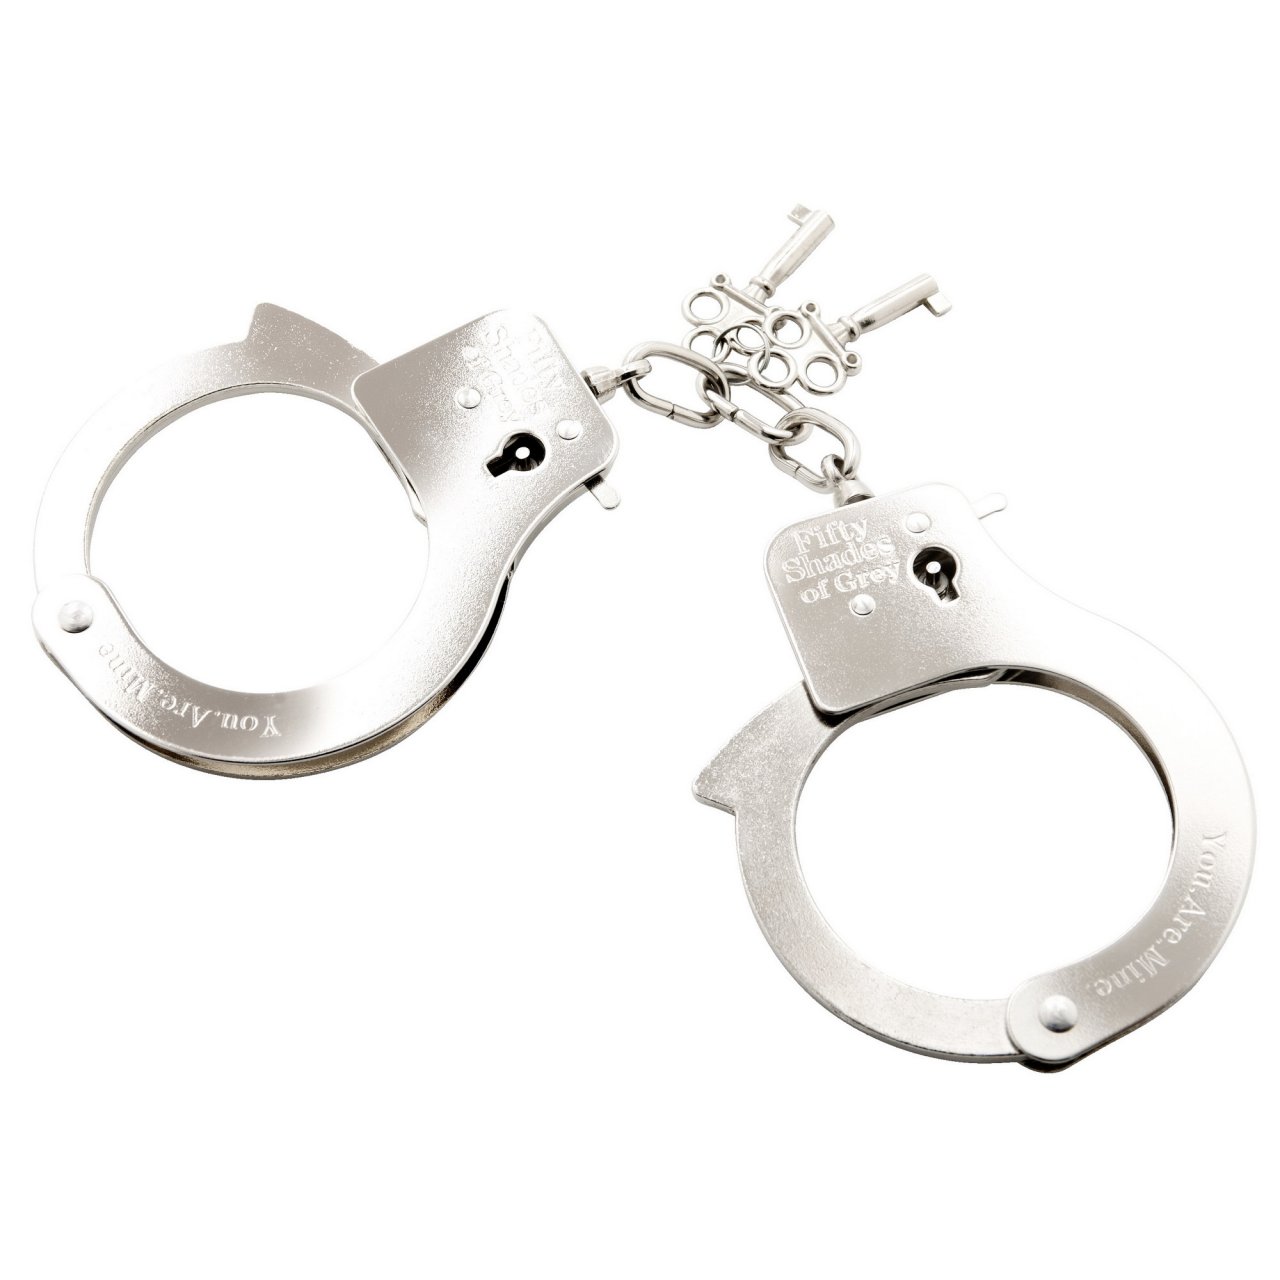 Handcuffs "classic" You.Are.Mine